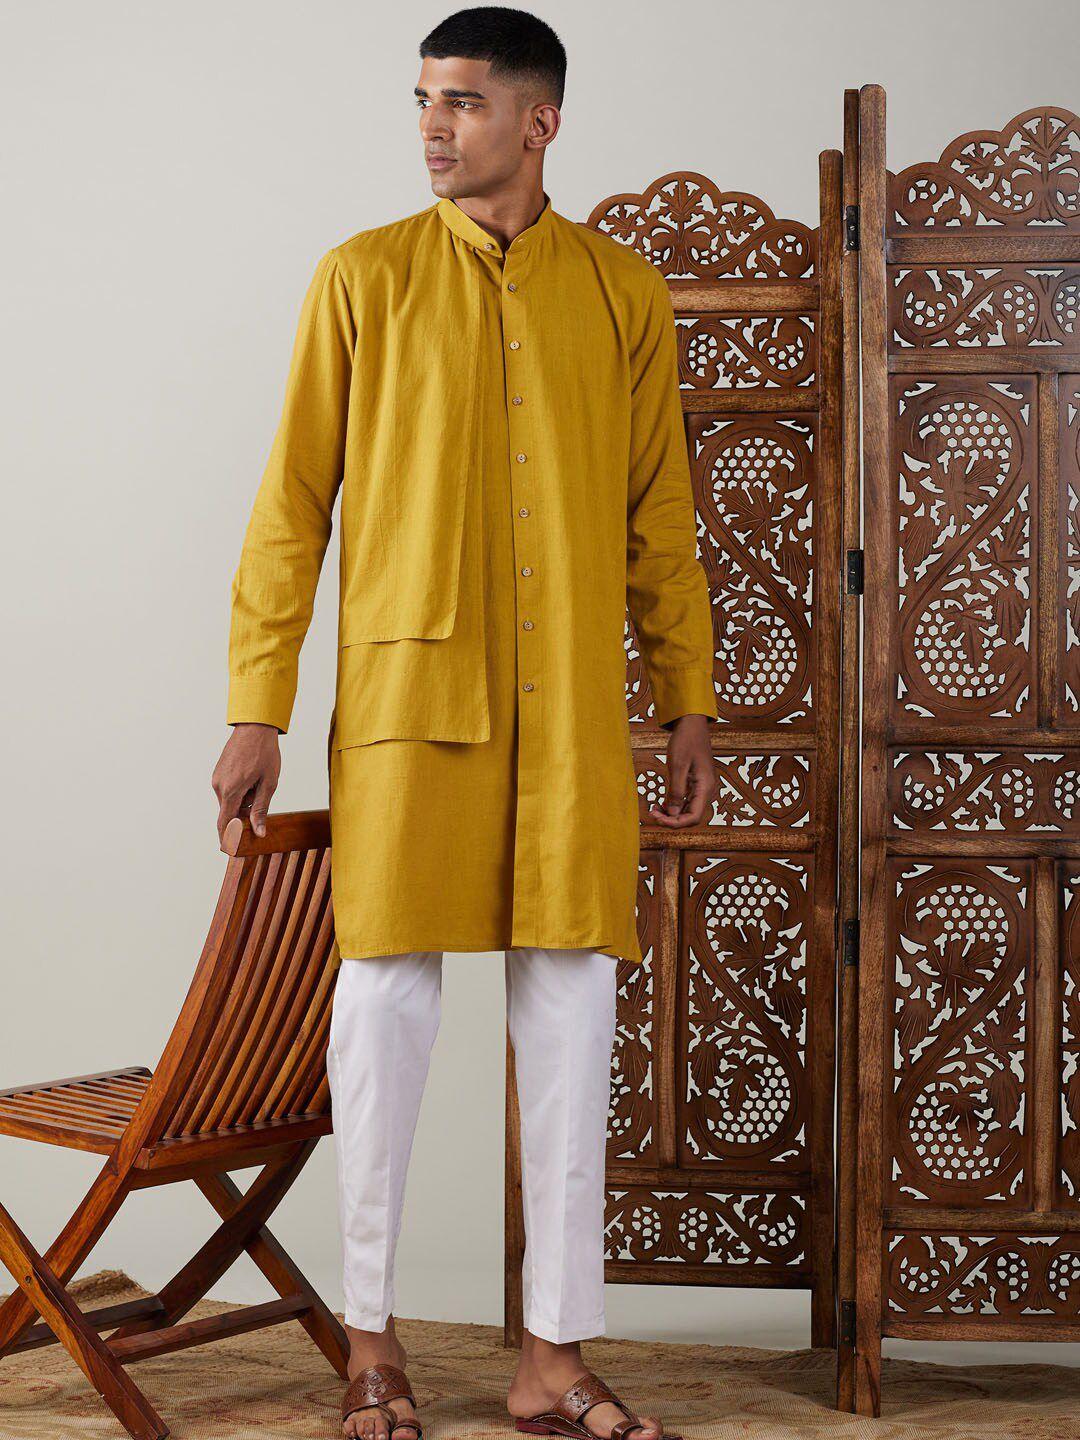 shvaas by vastramay pure cotton kurta with pyjamas